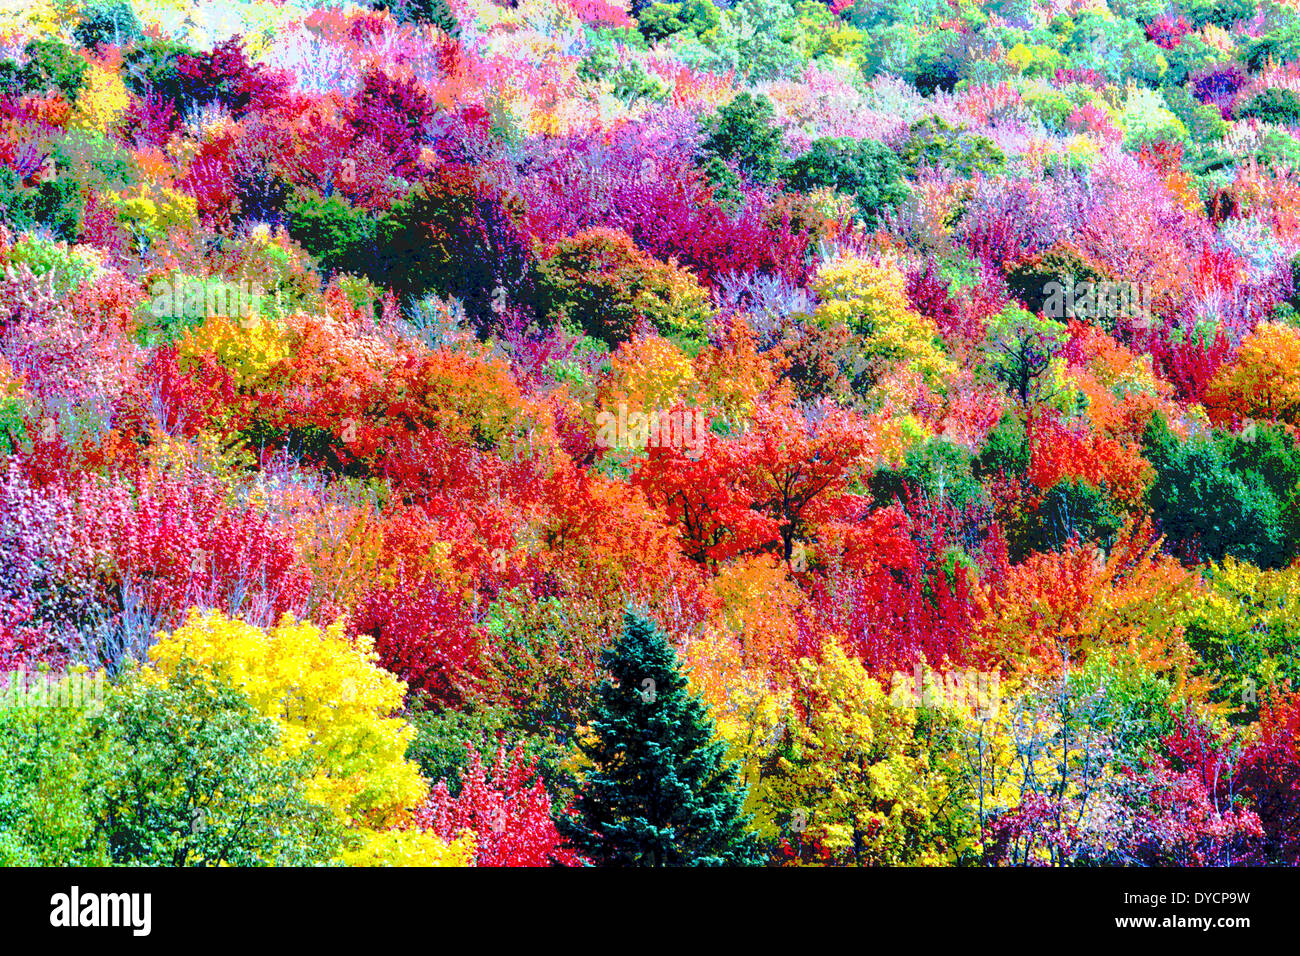 Die bunten Blätter der Bäume im Herbst in New England, USA, wurden digital verändert, um eine lebendige Gemälde von Herbstlaub zu erstellen. Stockfoto